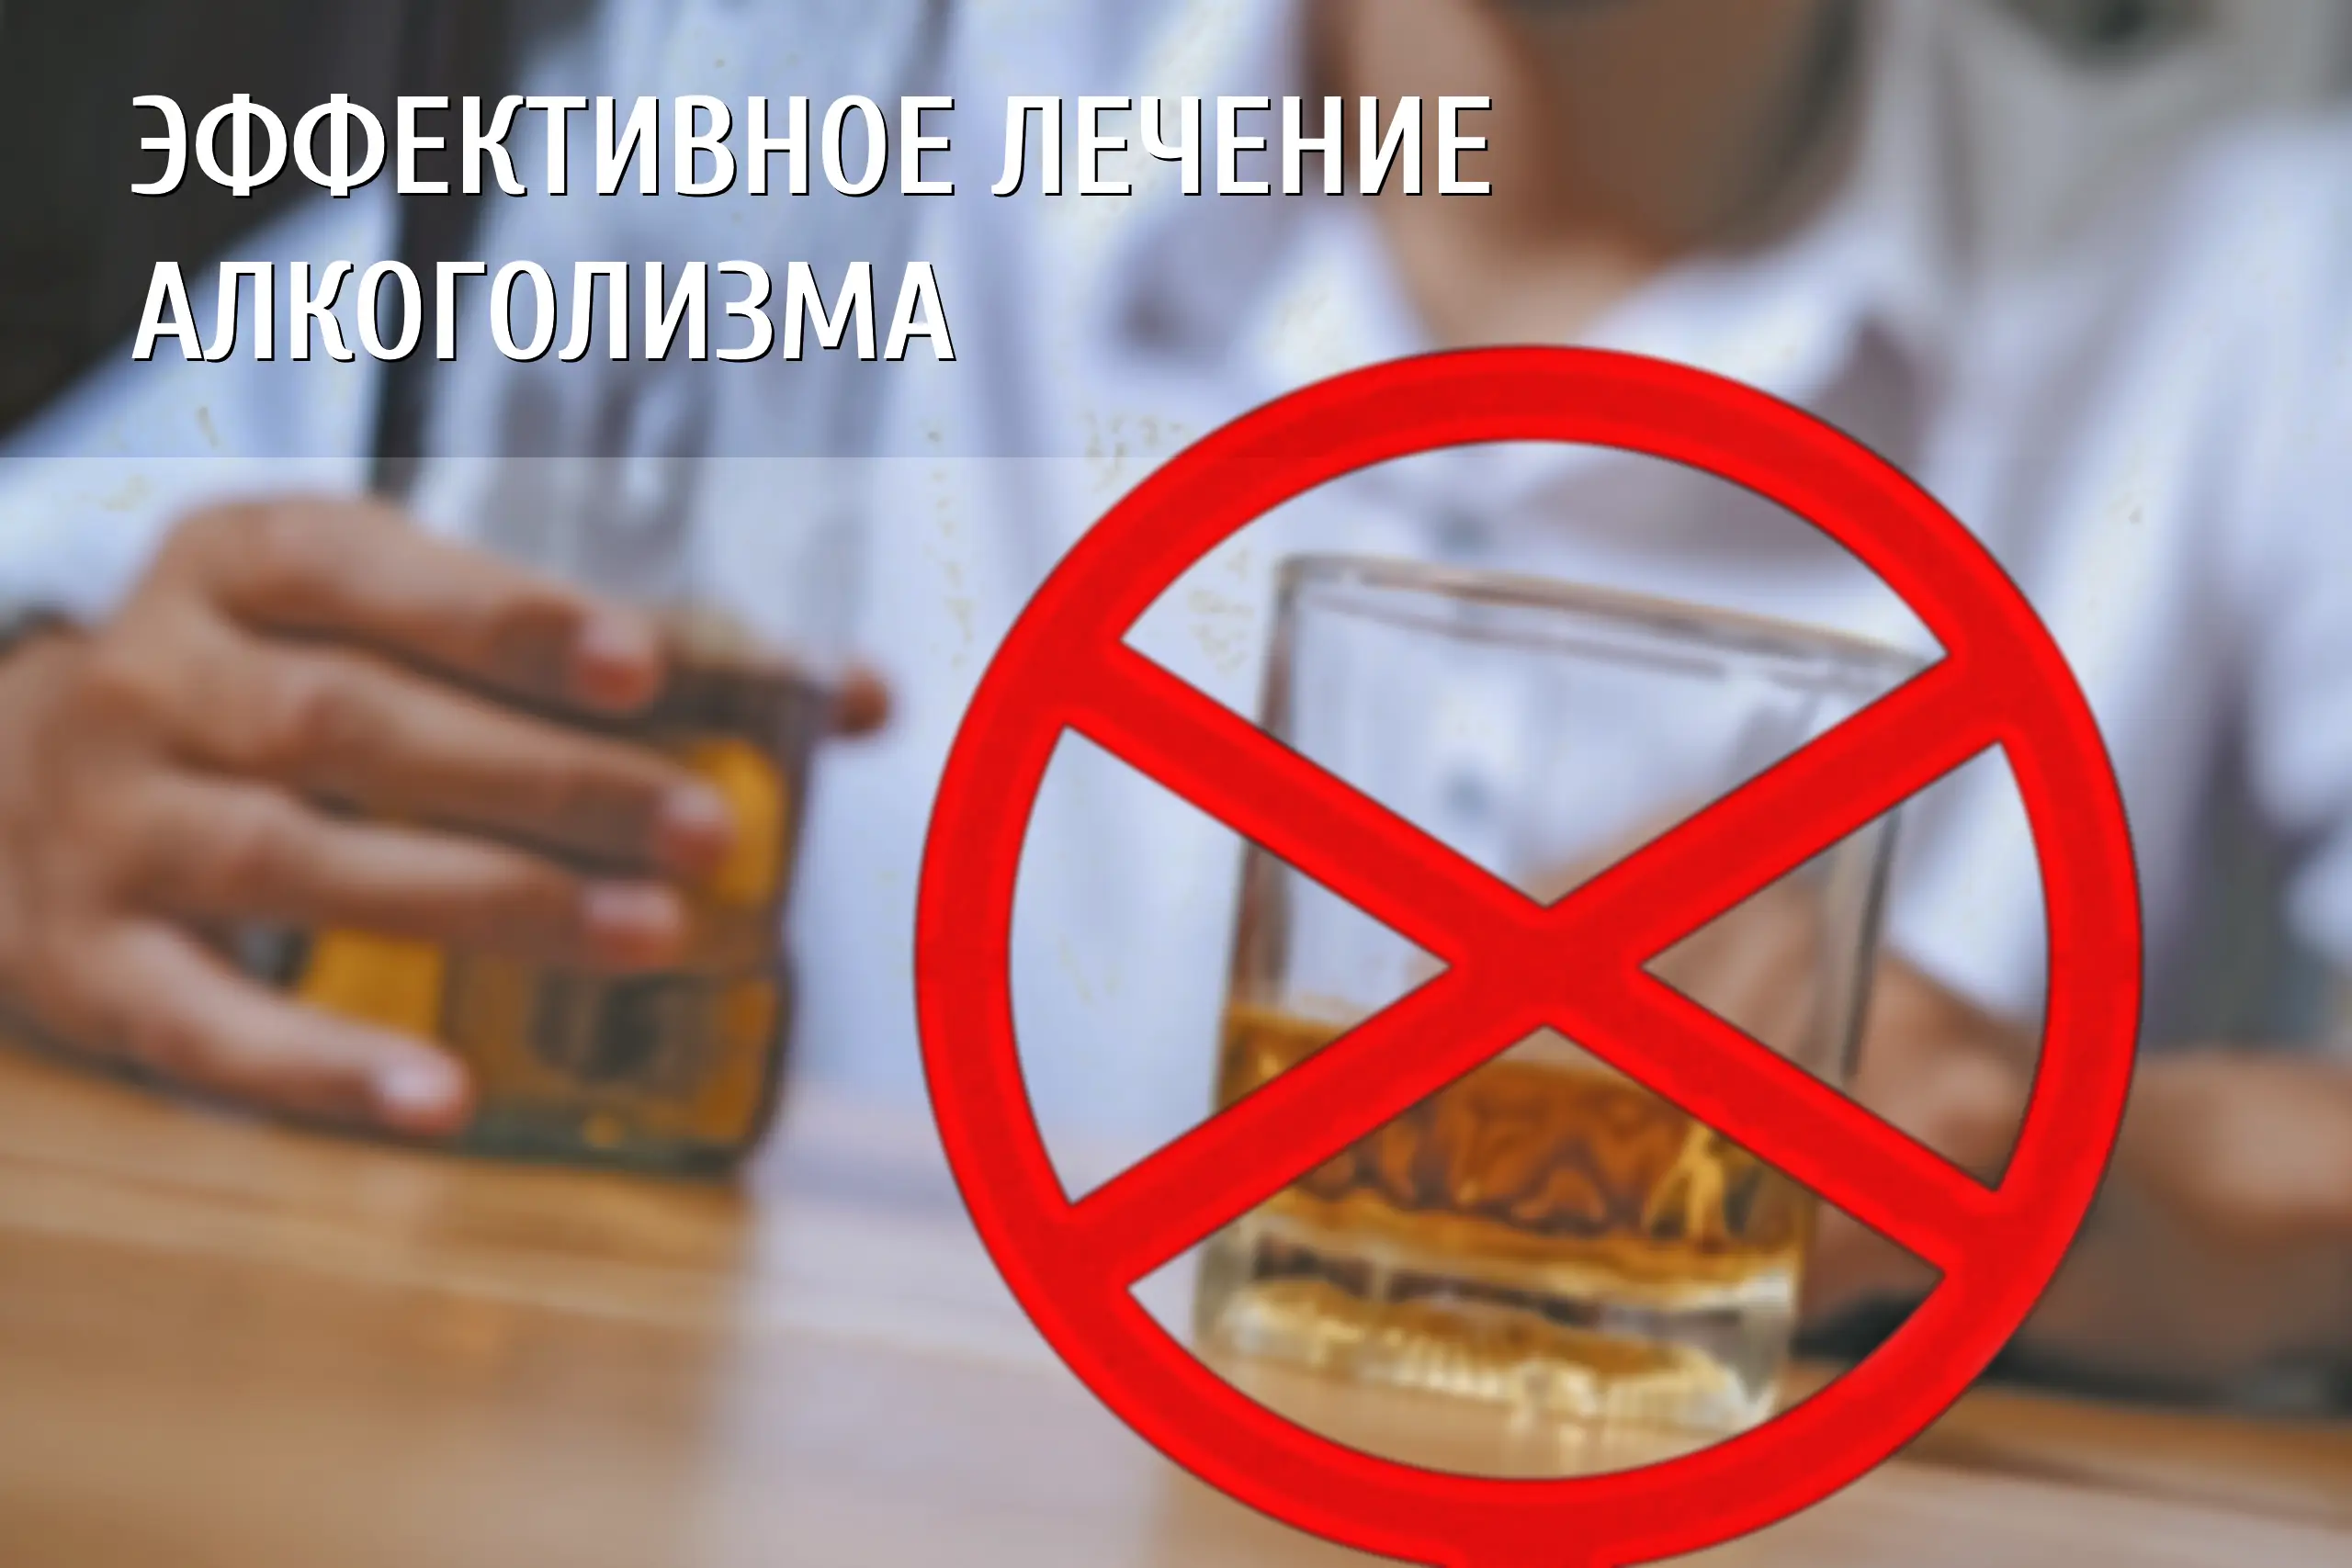 Баннер о лечении алкоголизма на котором изображено спиртное со знаком запрета